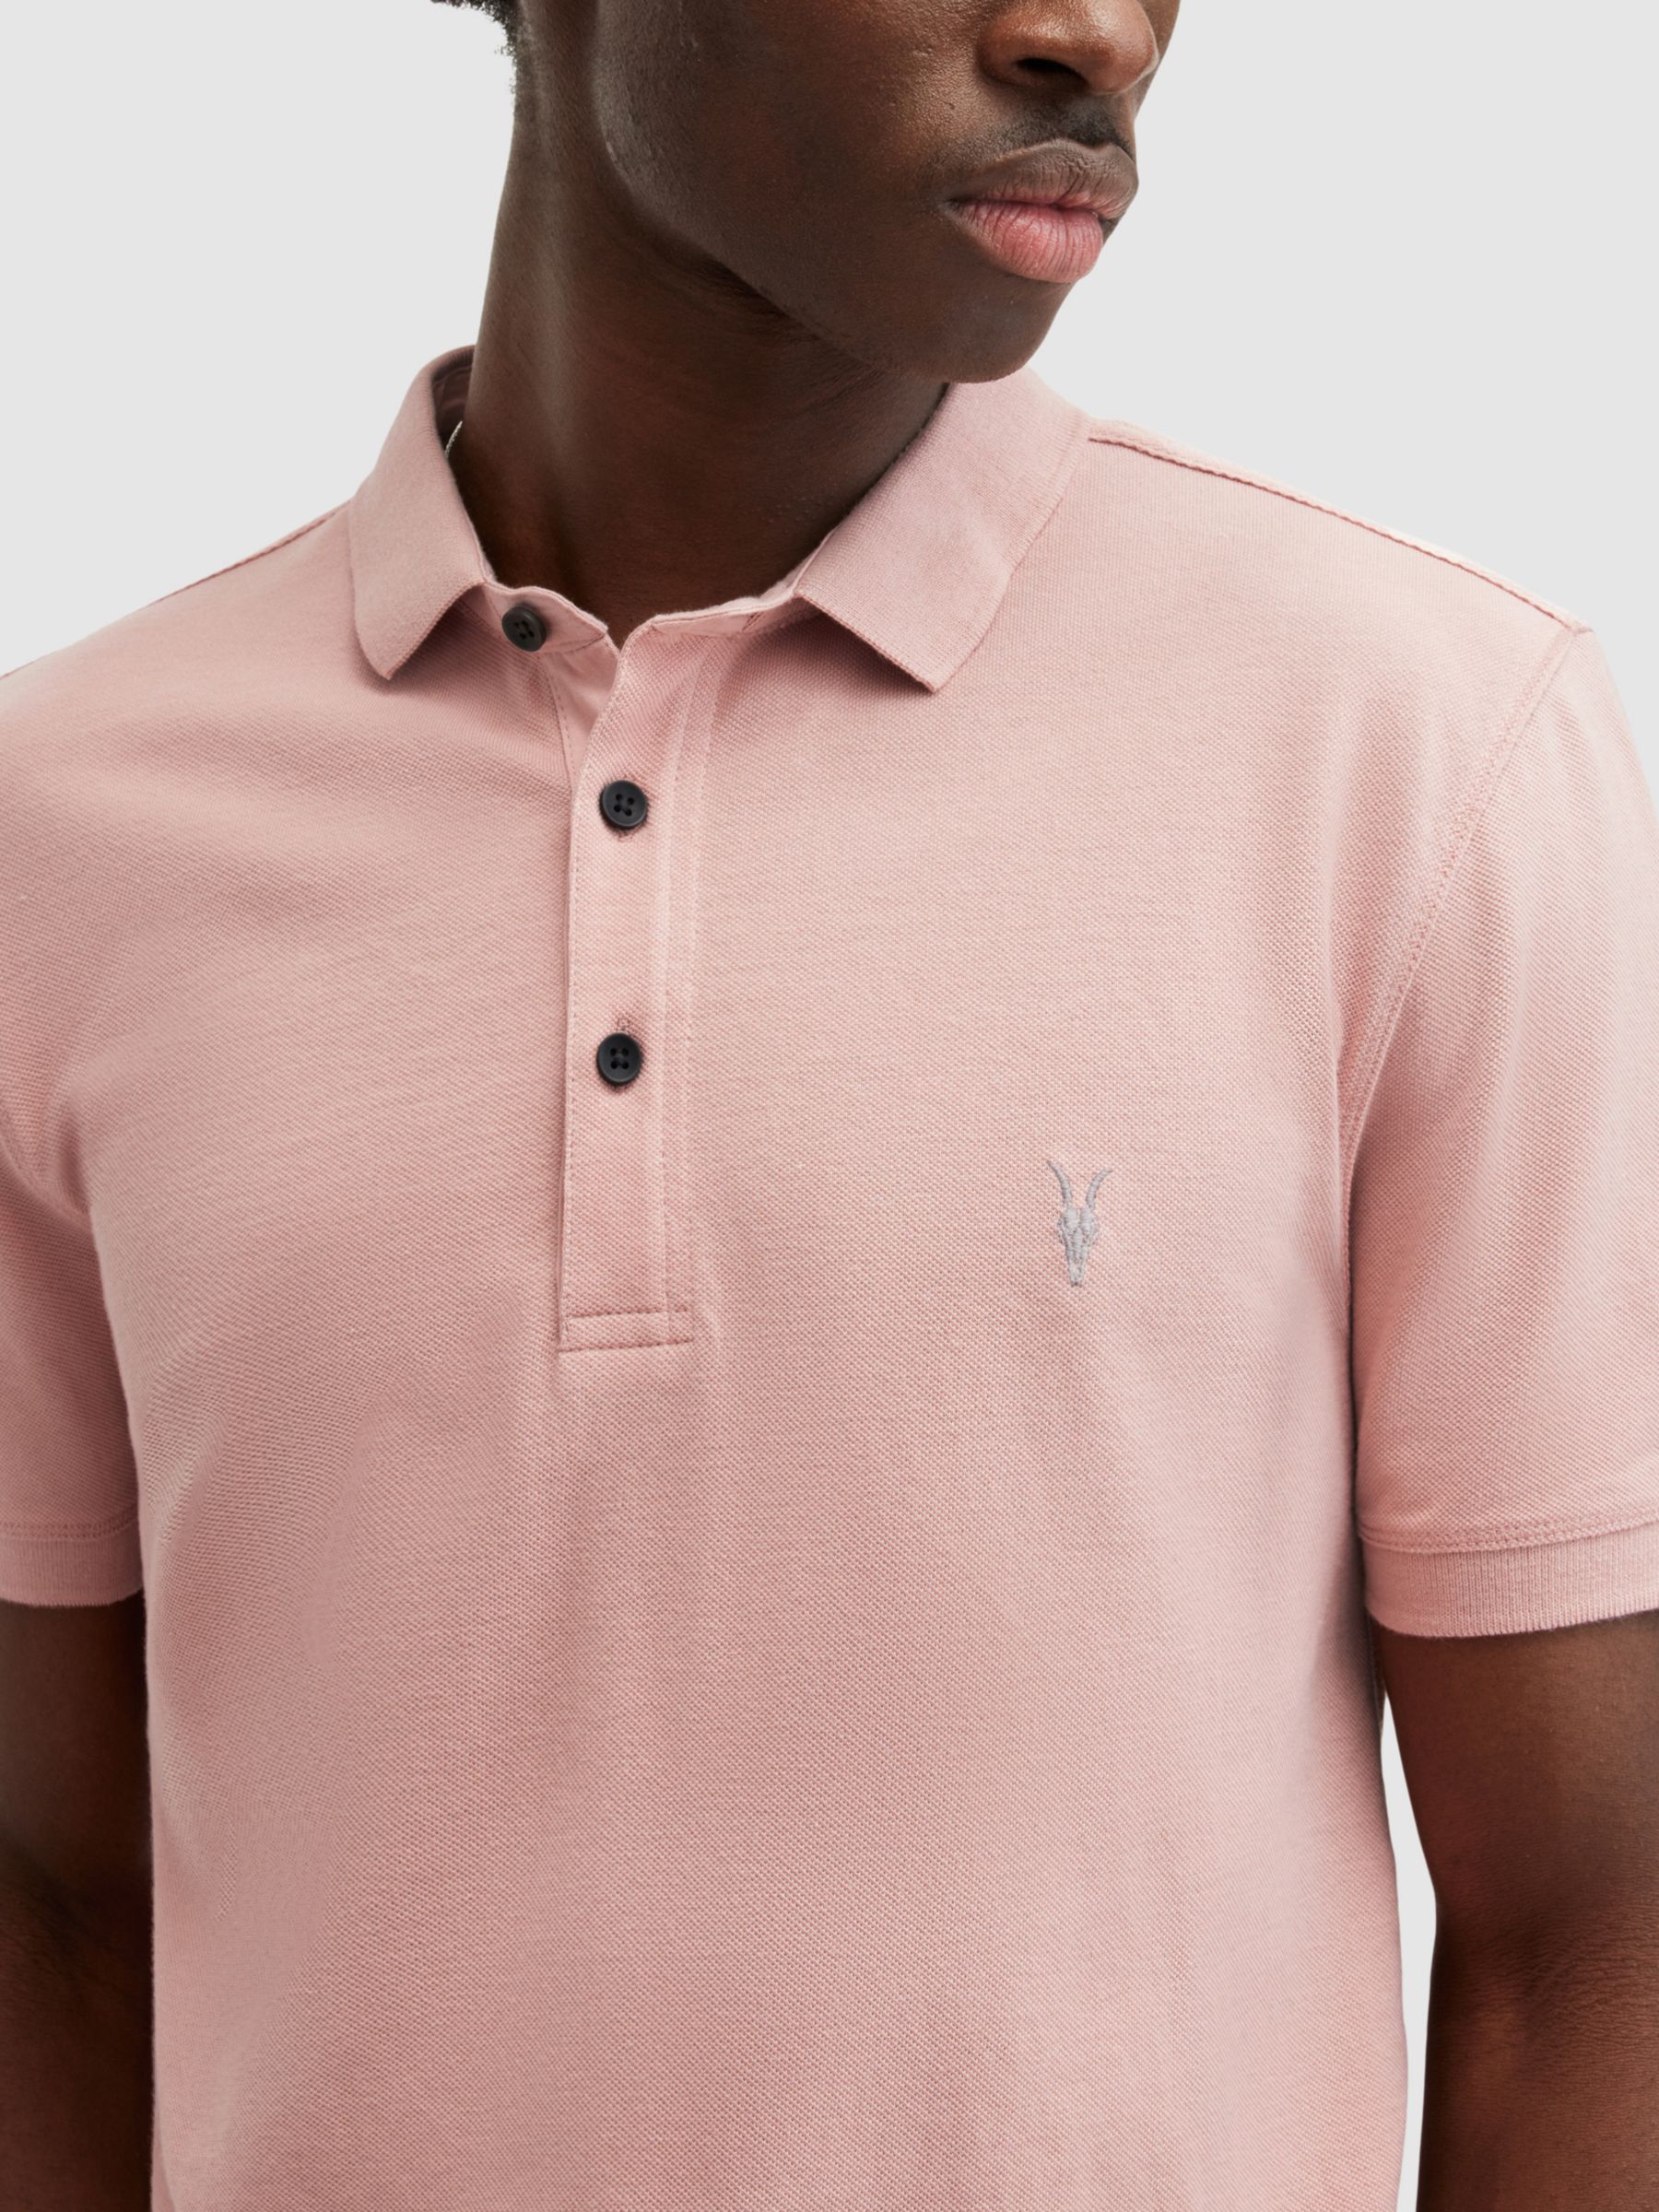 AllSaints Reform Organic Cotton Polo Shirt, Bramble Pink, L